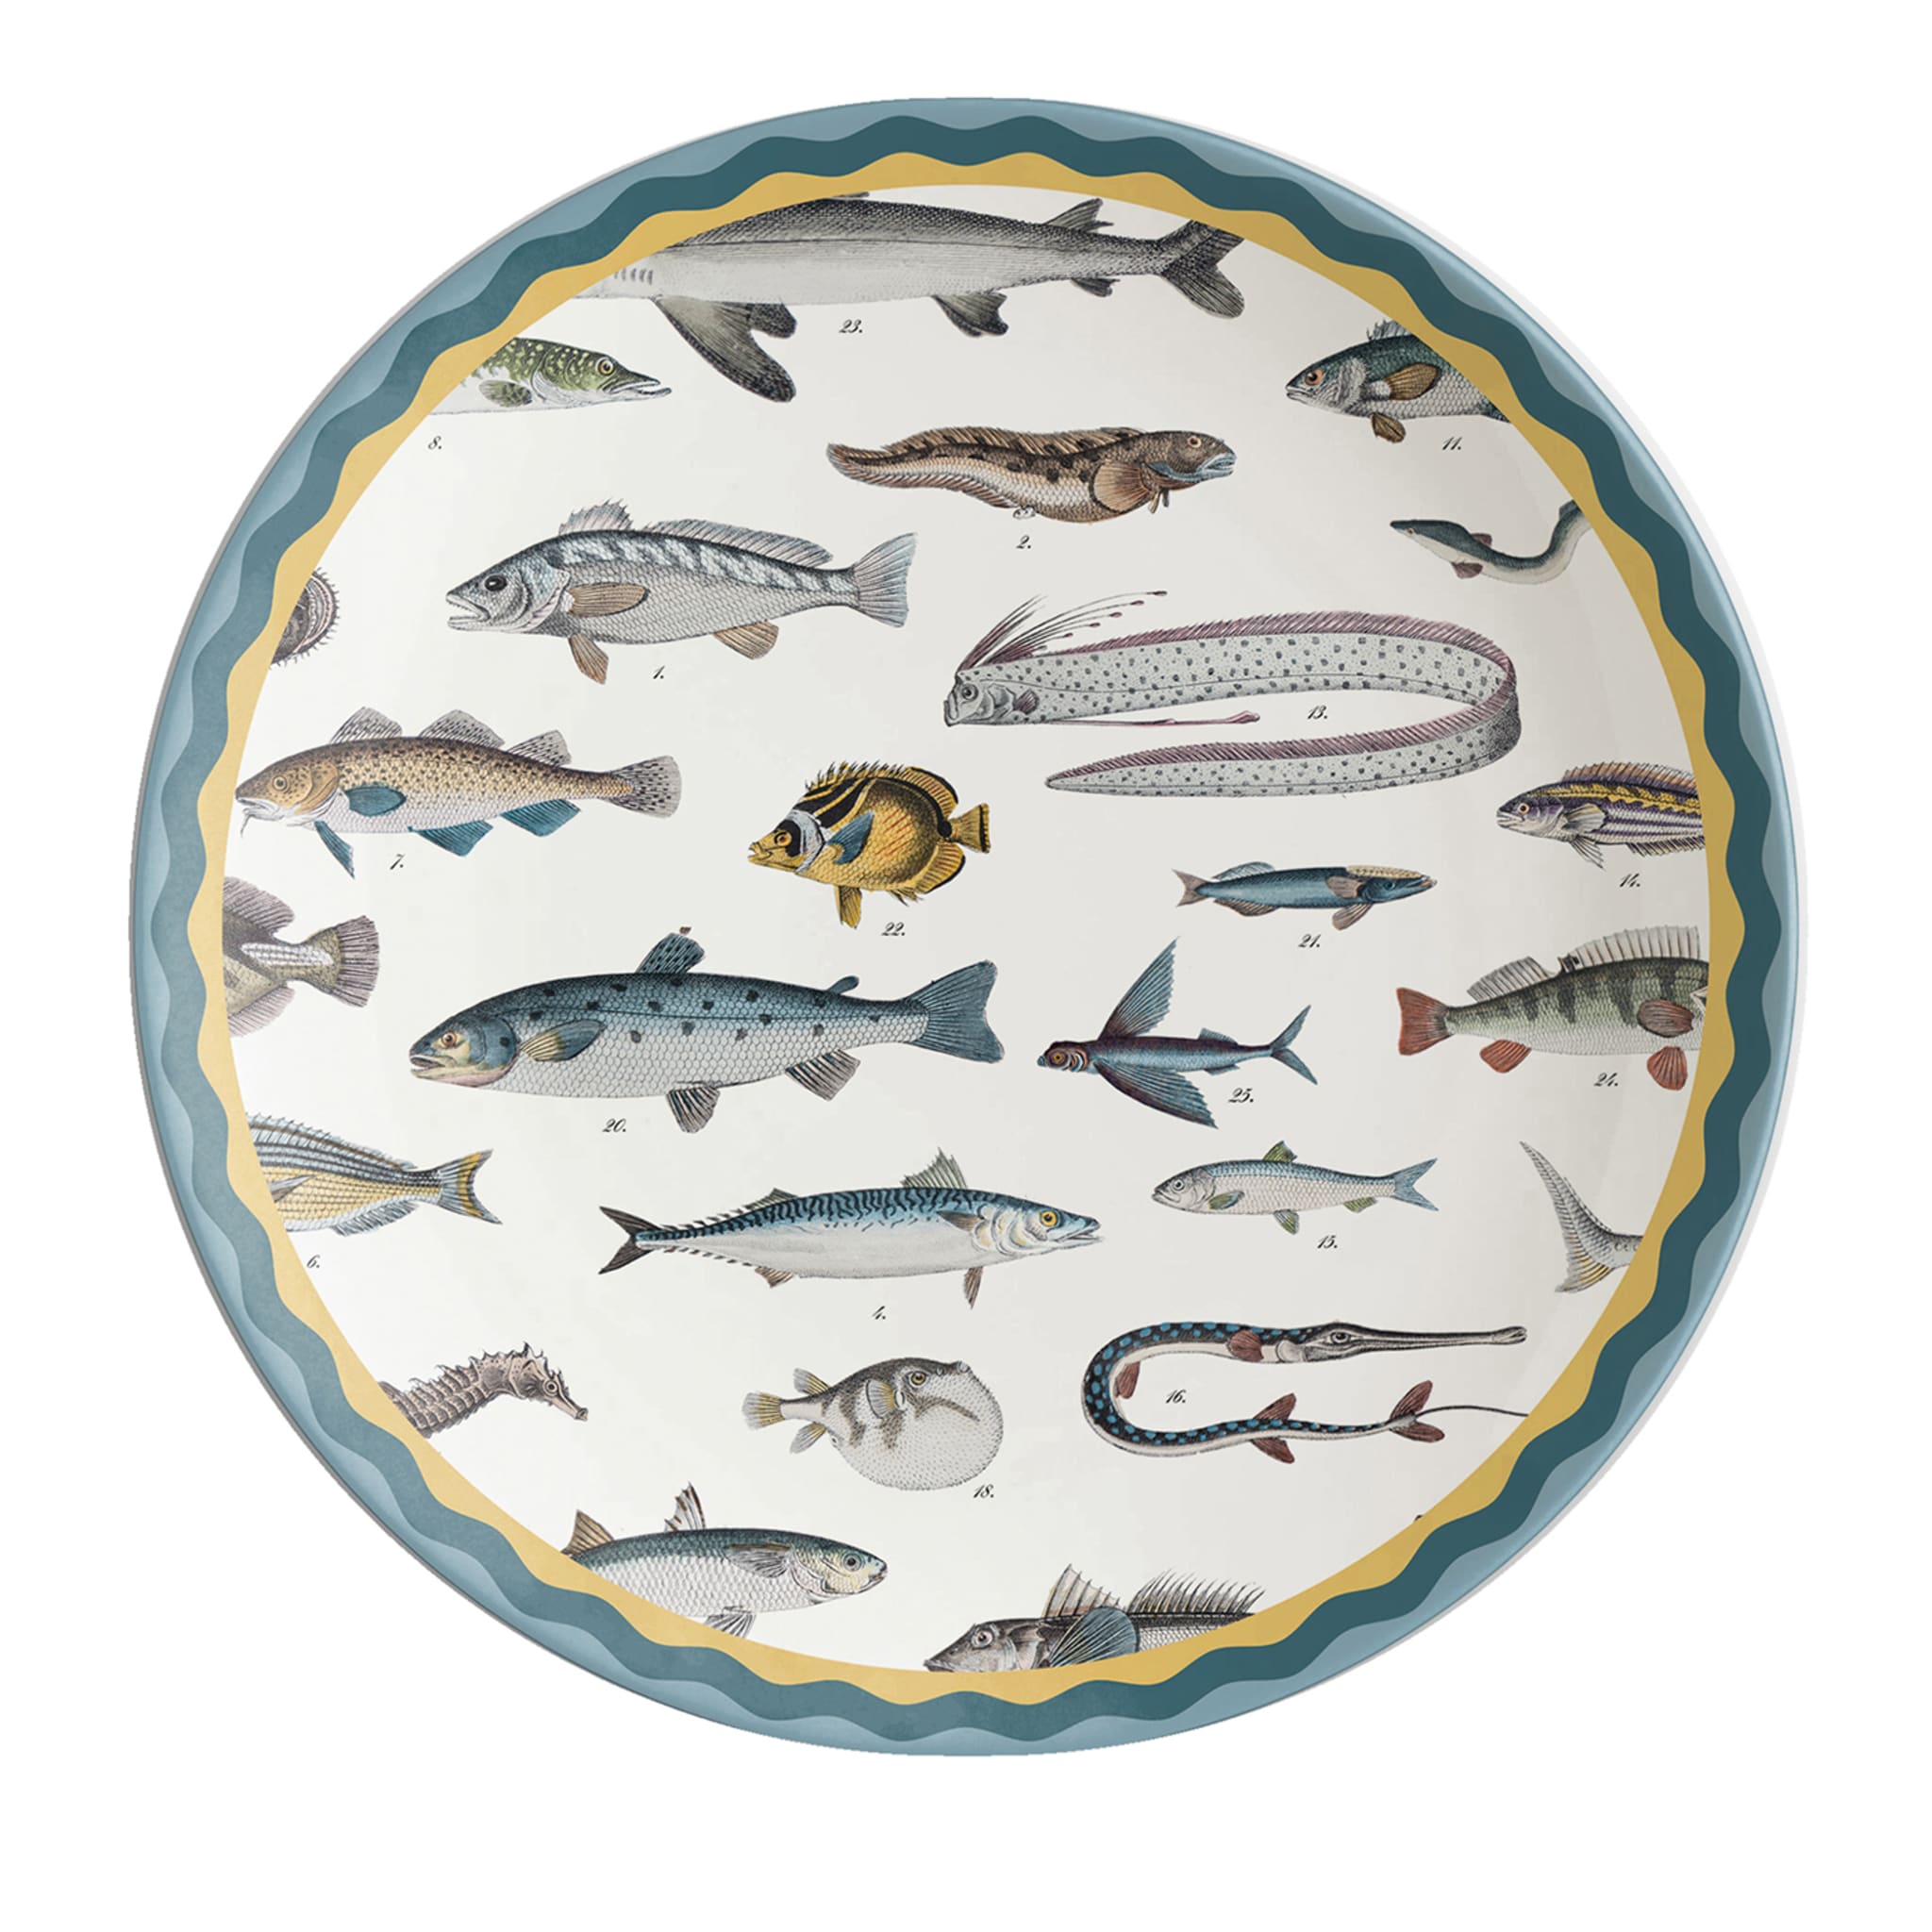 Cabinet De Curiosités Porcelain Dinner Plate With Fishes - Main view